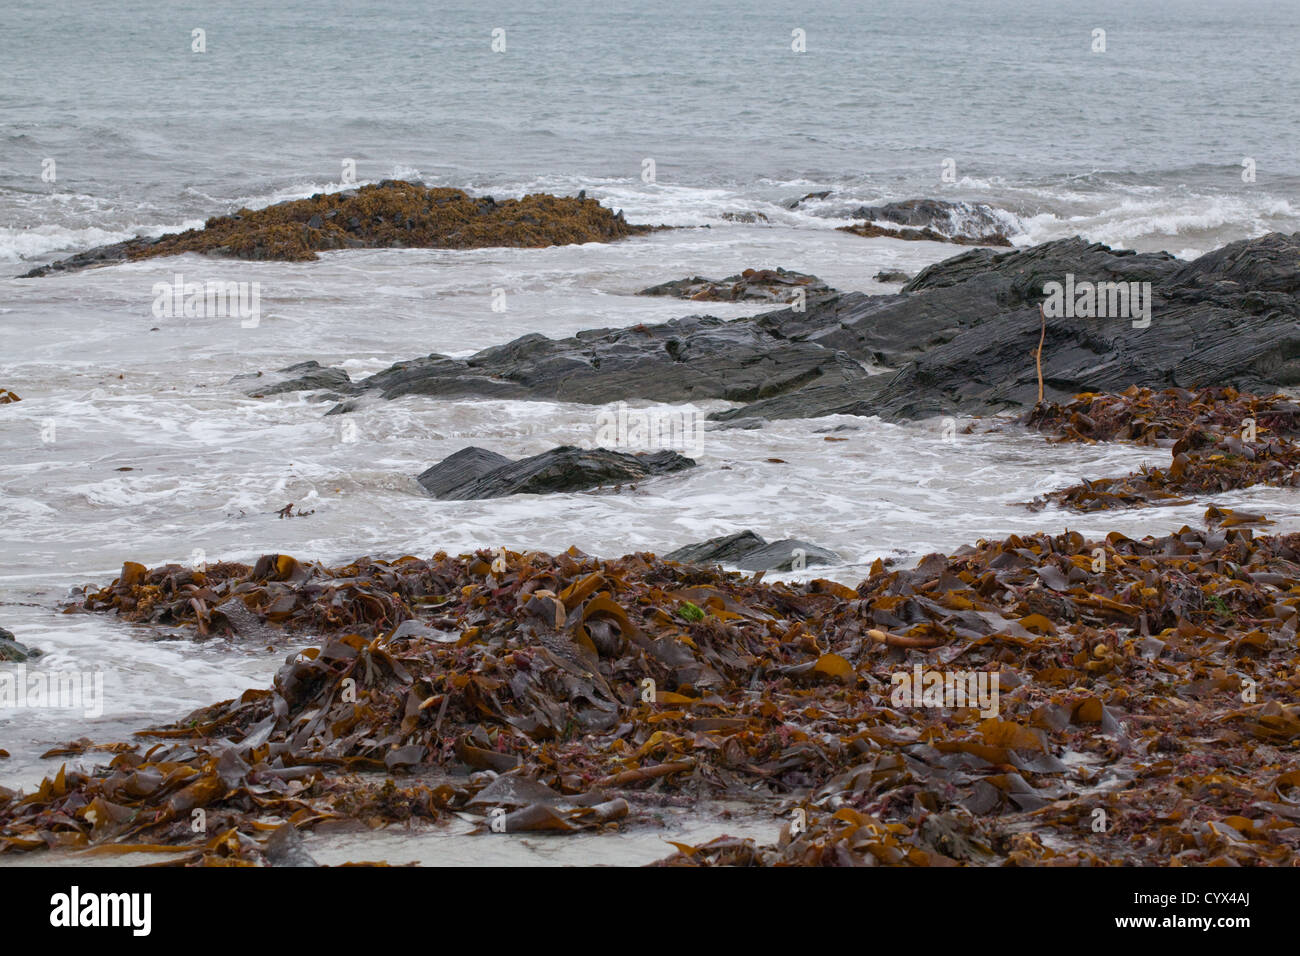 Einlaufenden Wellen am Strand, Isle of Iona, Inneren Hebriden, SW Schottland. Wrack Algen Meer Unkraut von Flut angespült. Westküste Iona. Stockfoto